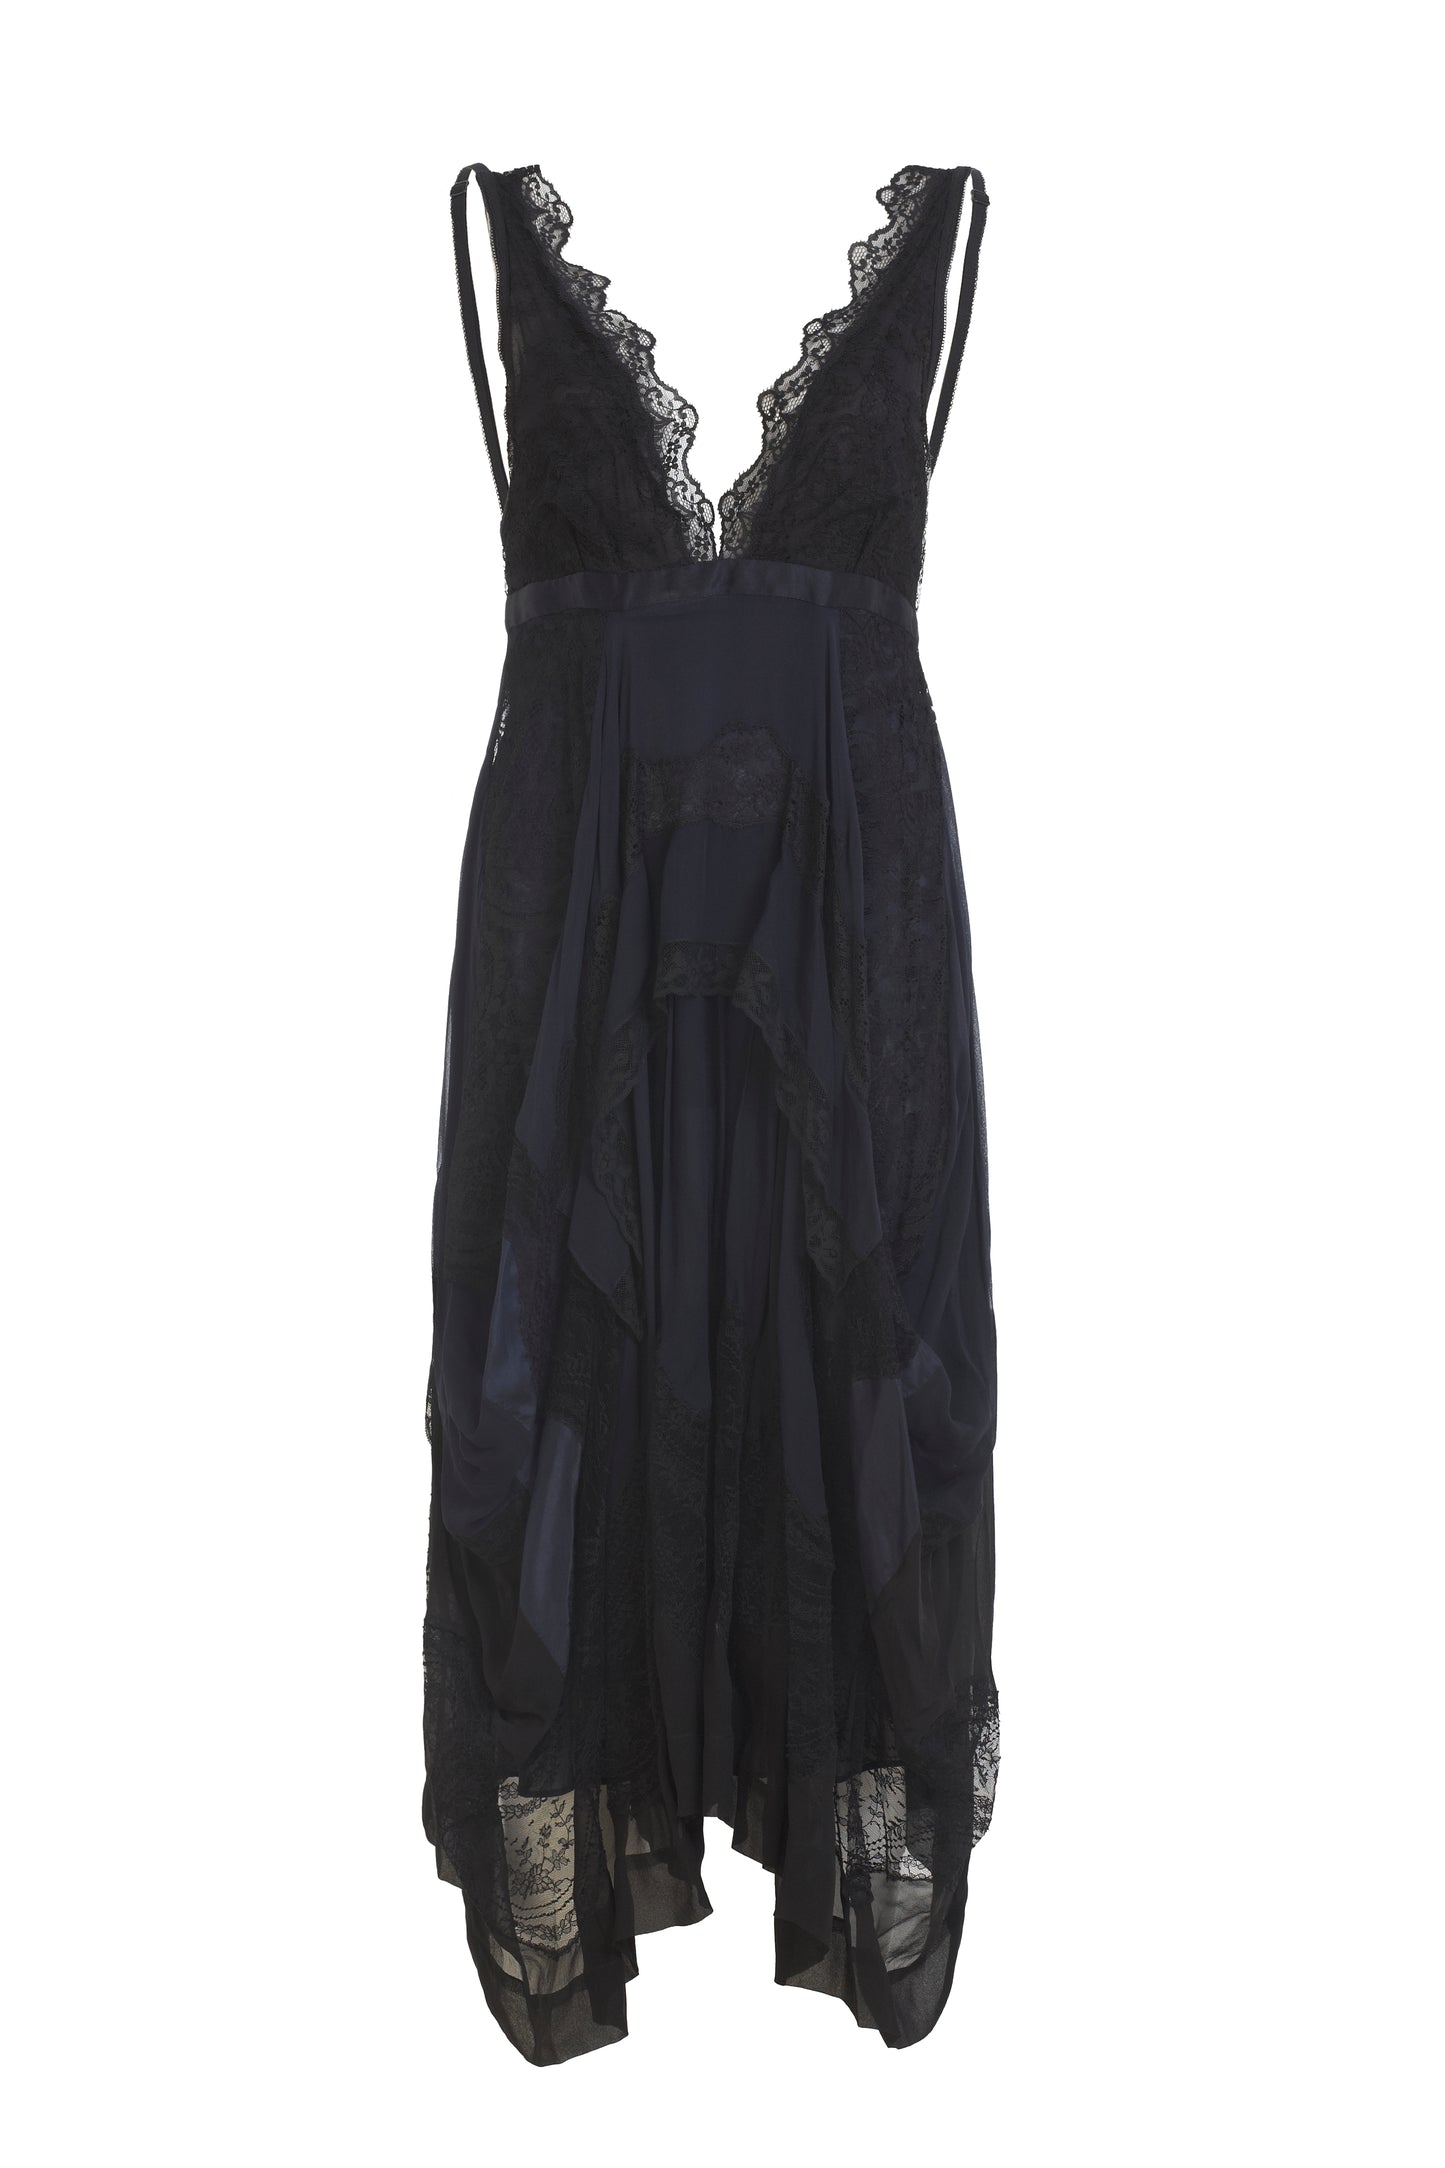 Balenciaga dark blue silk summer dress with lace overlay